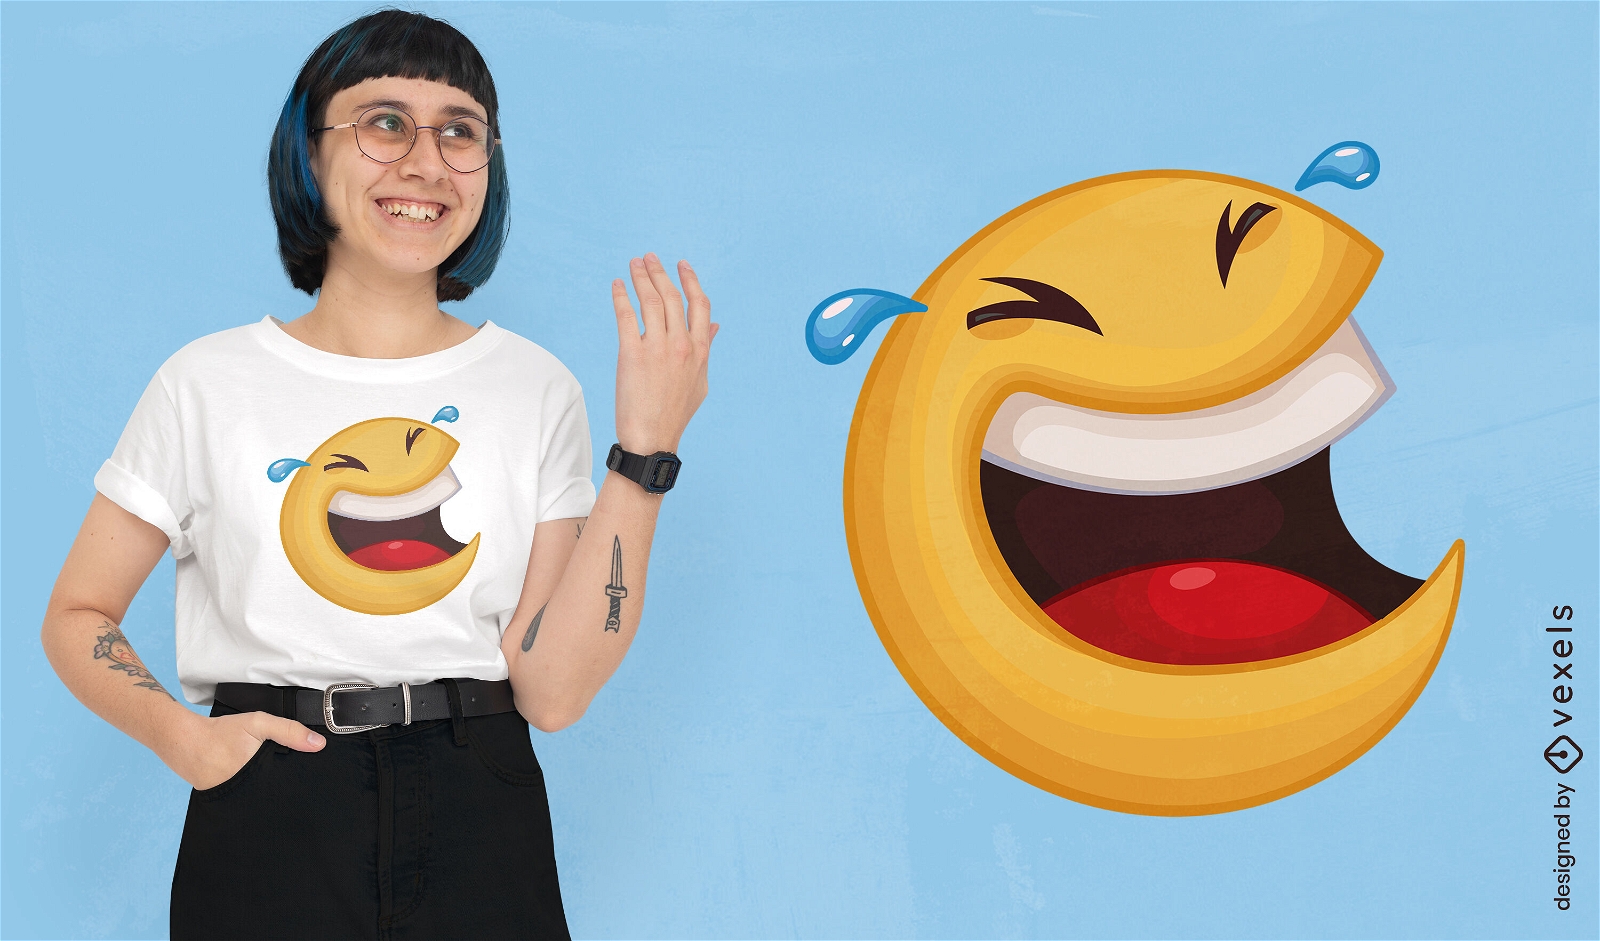 Laughing emoji t-shirt design